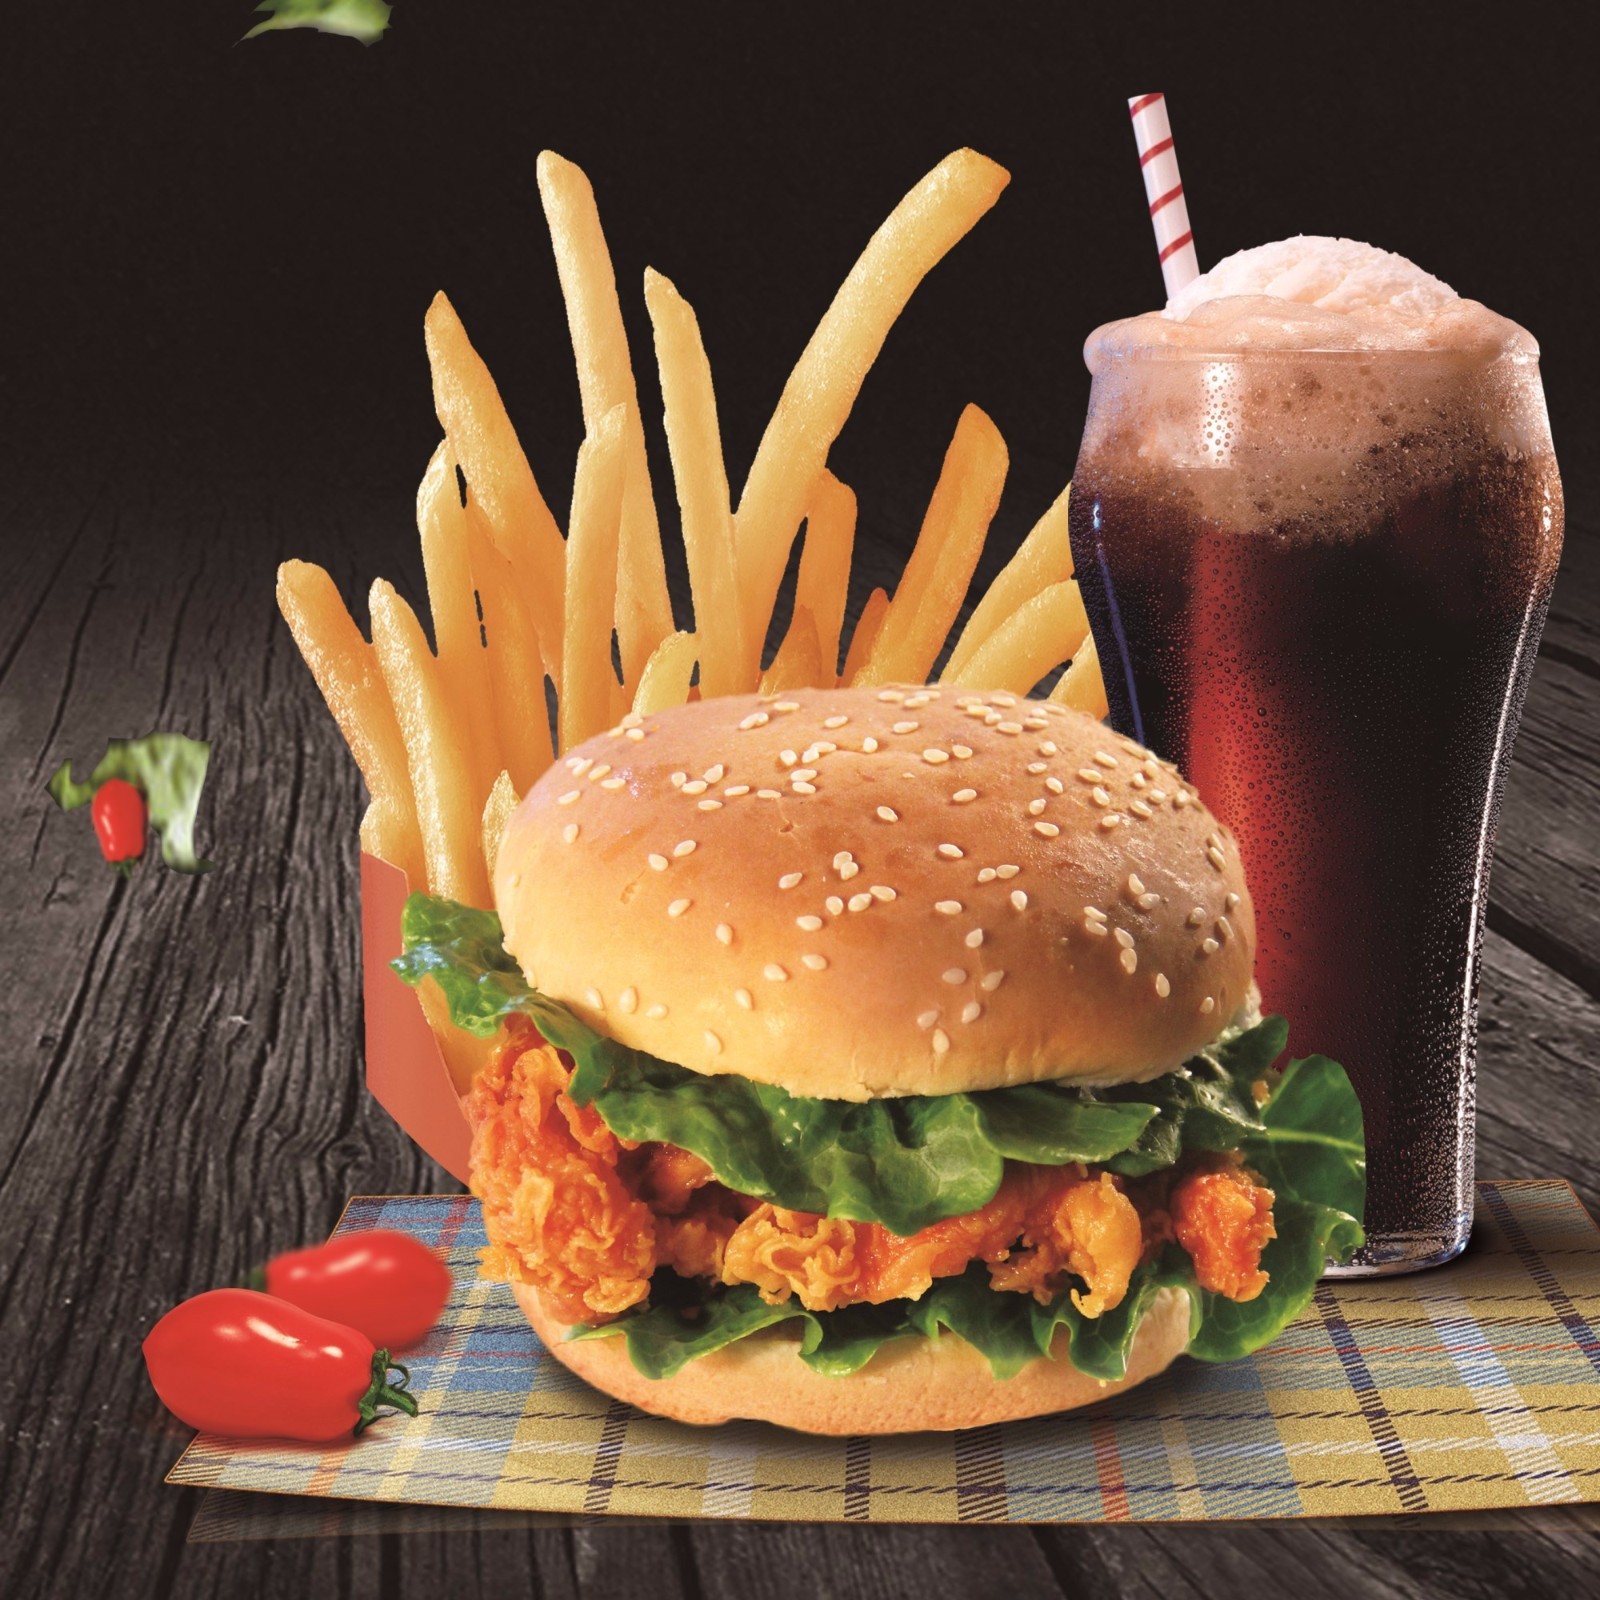 加盟可可60度炸鸡汉堡,做一个消费者喜爱的快餐品牌!